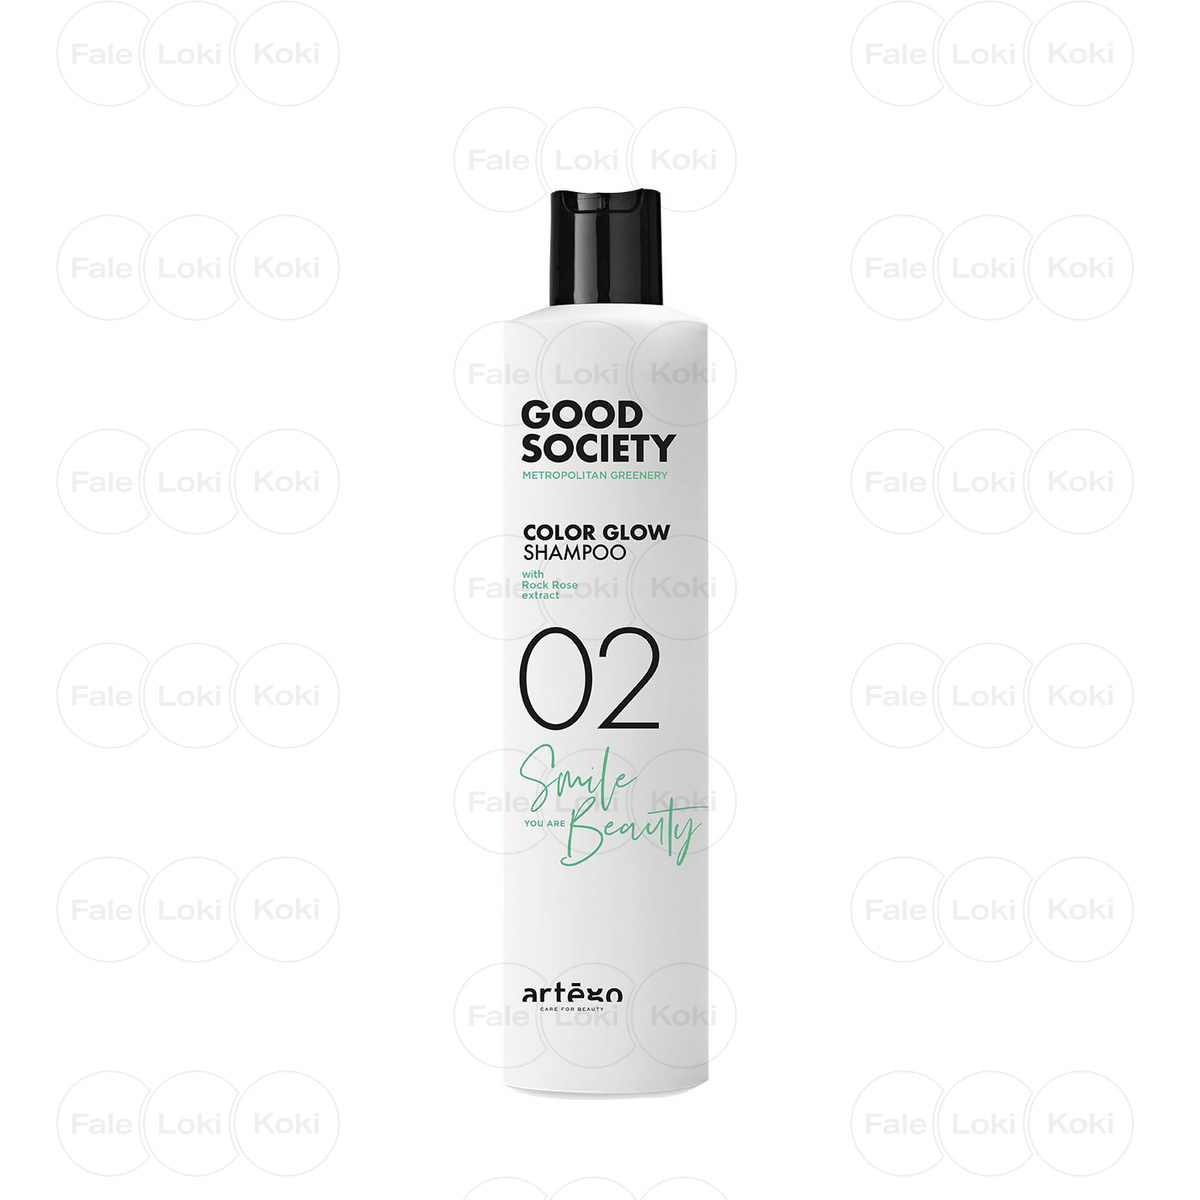 ARTEGO GOOD SOCIETY szampon do włosów farbowanych 02 COLOR GLOW SHAMPOO 250 ml